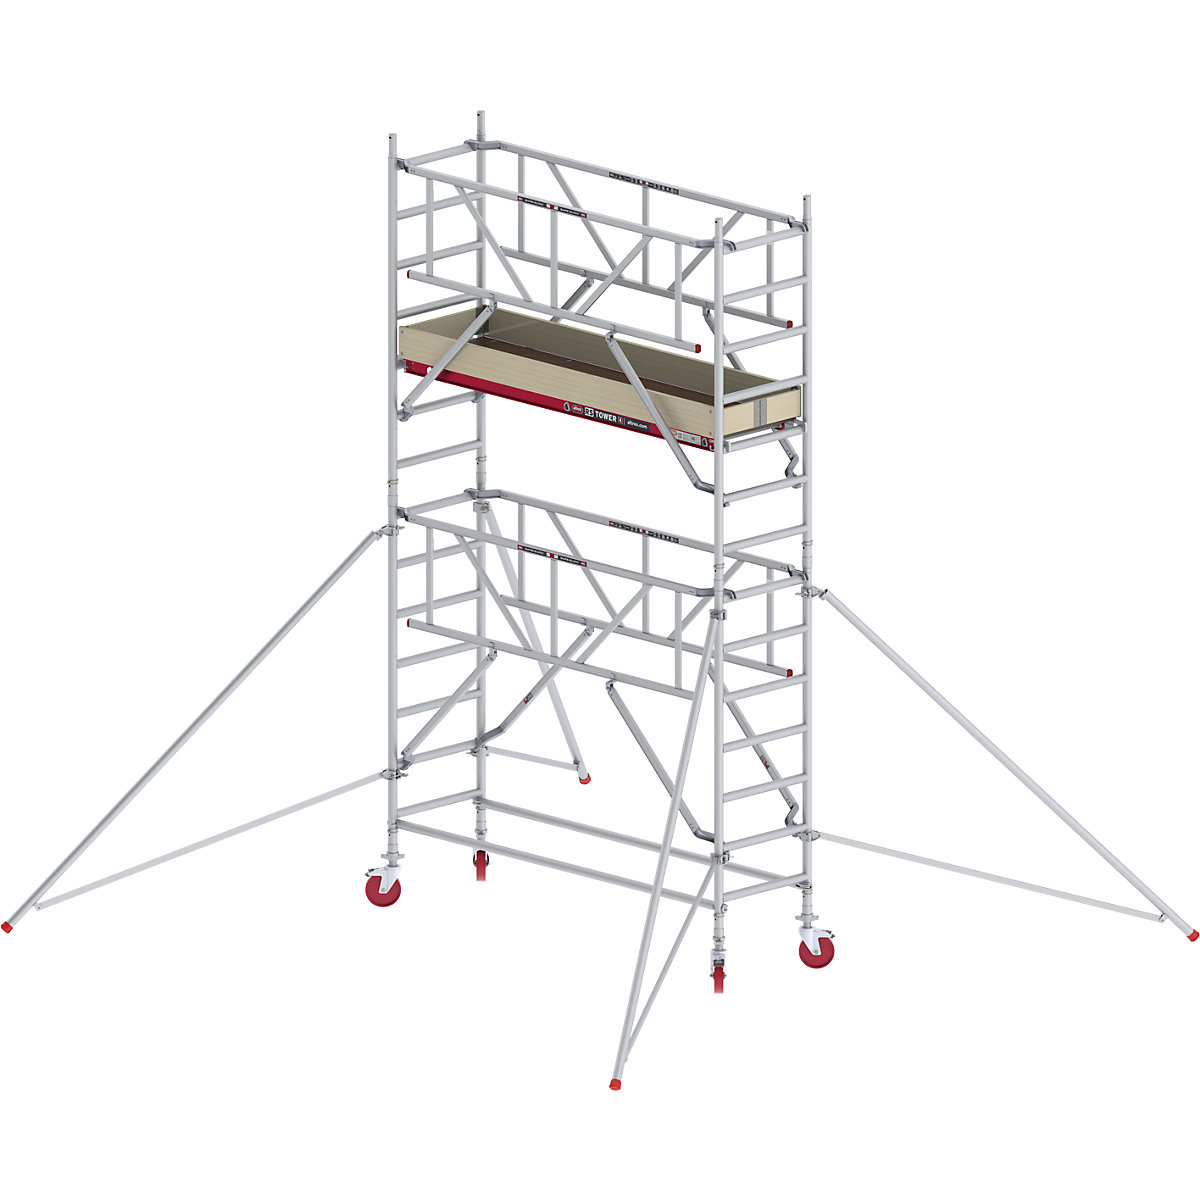 Rusztowanie ruchome RS TOWER 41, wąskie, z poręczą Safe-Quick® – Altrex, platforma drewniana, dł. 1,85 m, wys. robocza 5,20 m-6